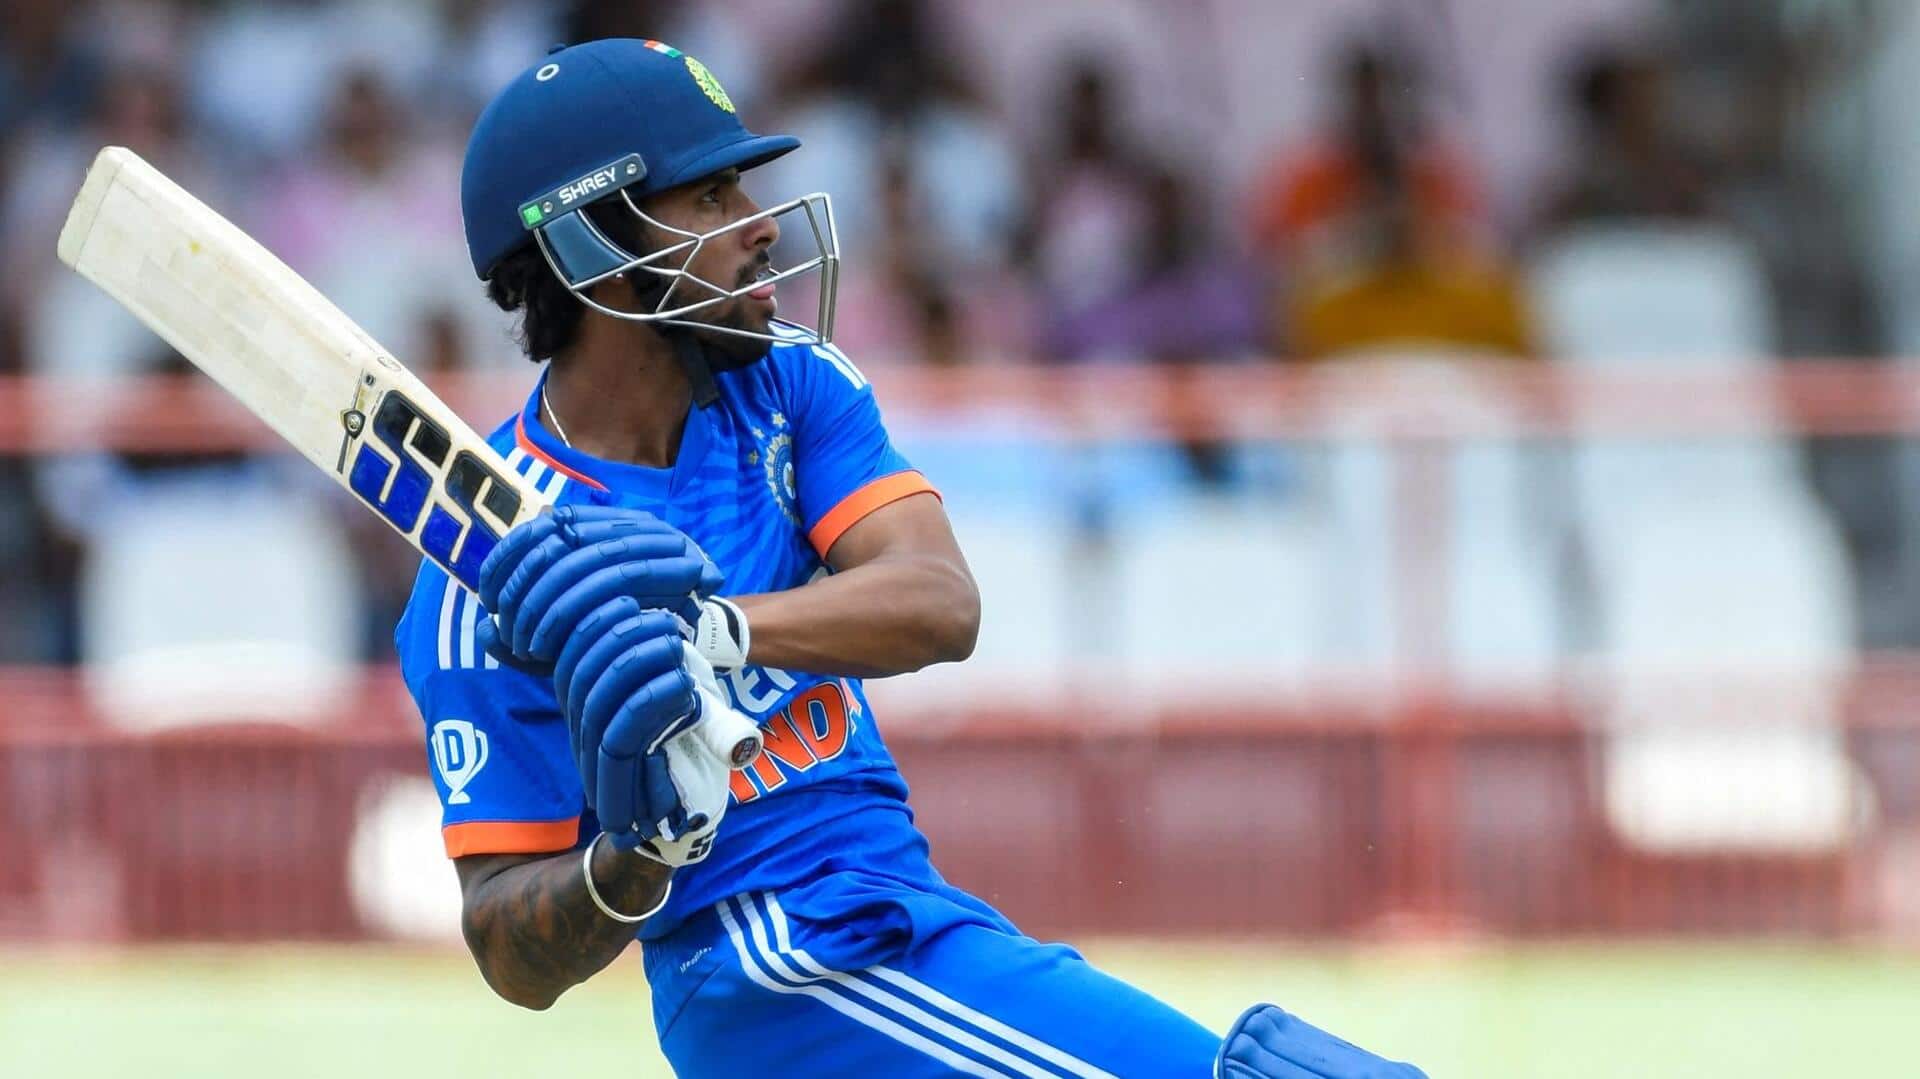 तिलक वर्मा टी-20 अंतरराष्ट्रीय अर्धशतक जड़ने वाले दूसरे सबसे युवा भारतीय बल्लेबाज बने, जानिए आंकड़े